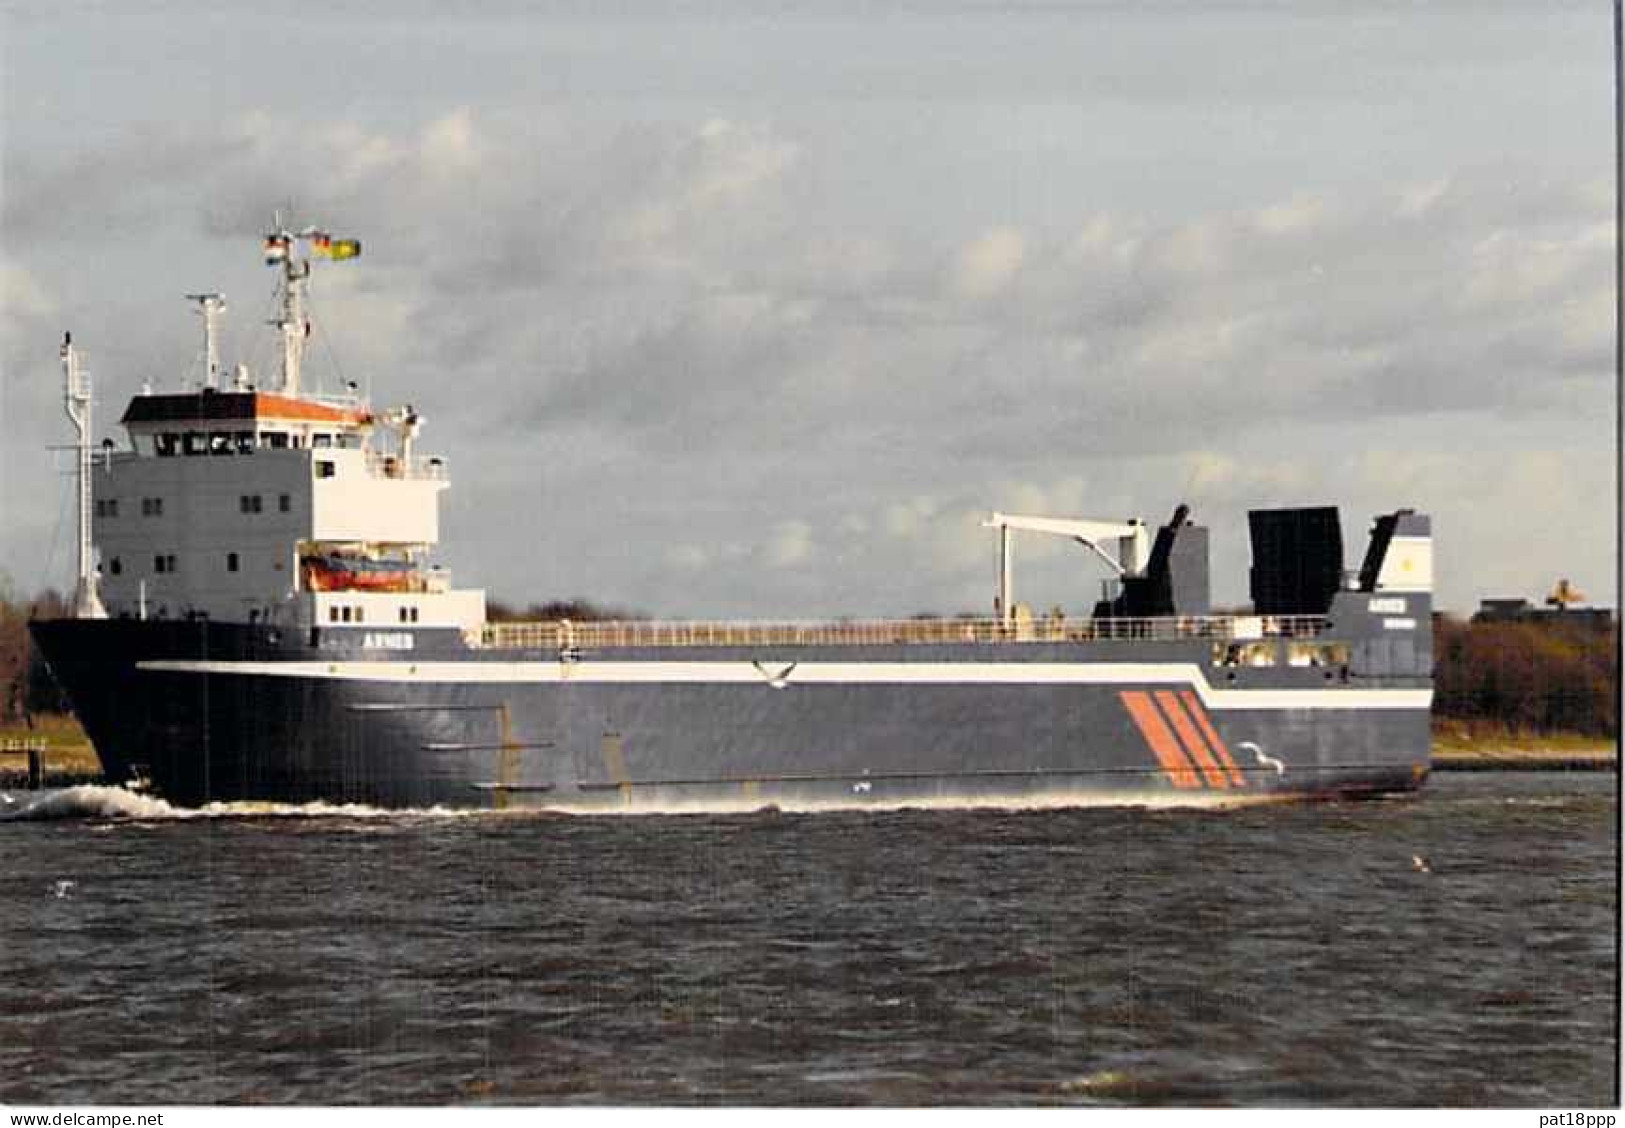 Lot de 100 BATEAUX DE COMMERCE - Photos couleur format CPM Cargo Merchant Ship Tanker Carrier Boats 1980-2000 tous pays